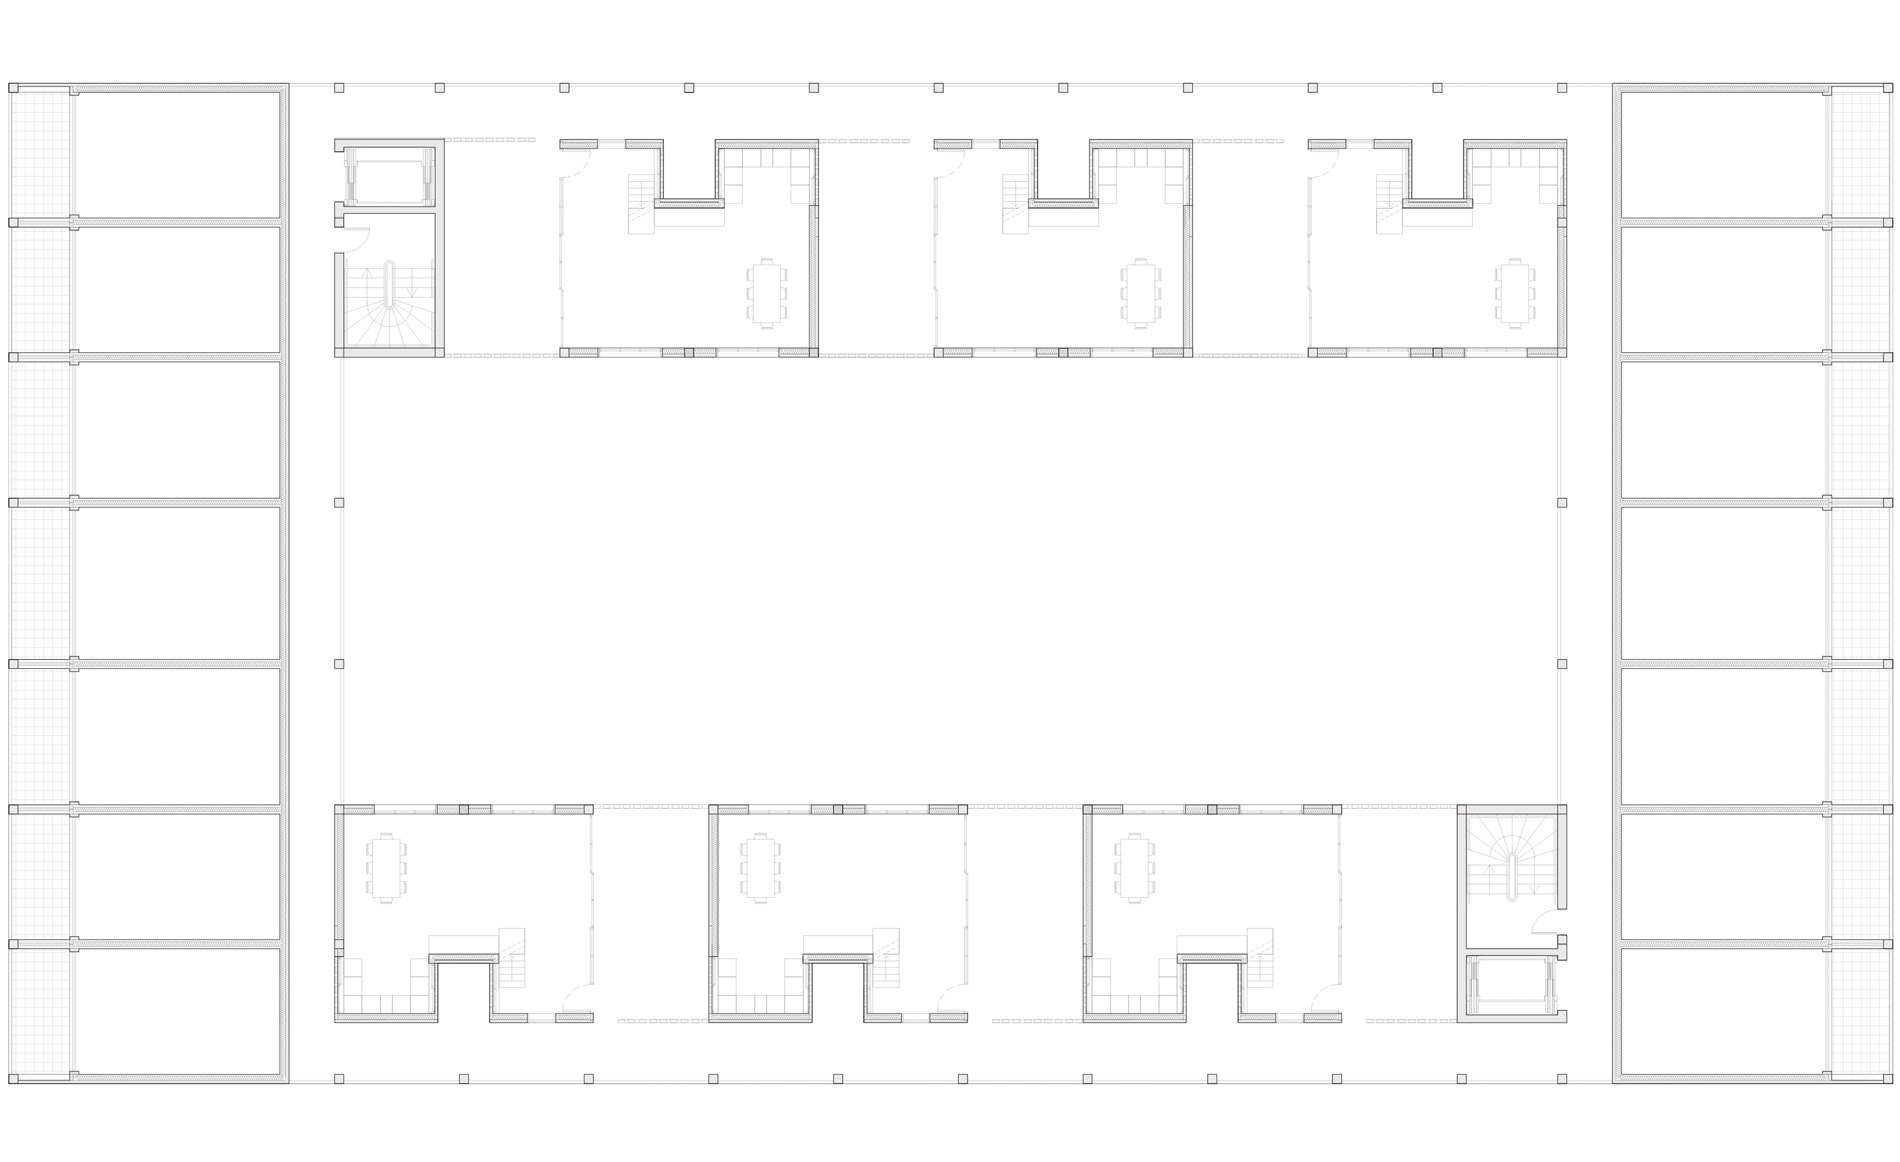 Plan étage courant d'un projet de logements à Dunkerque